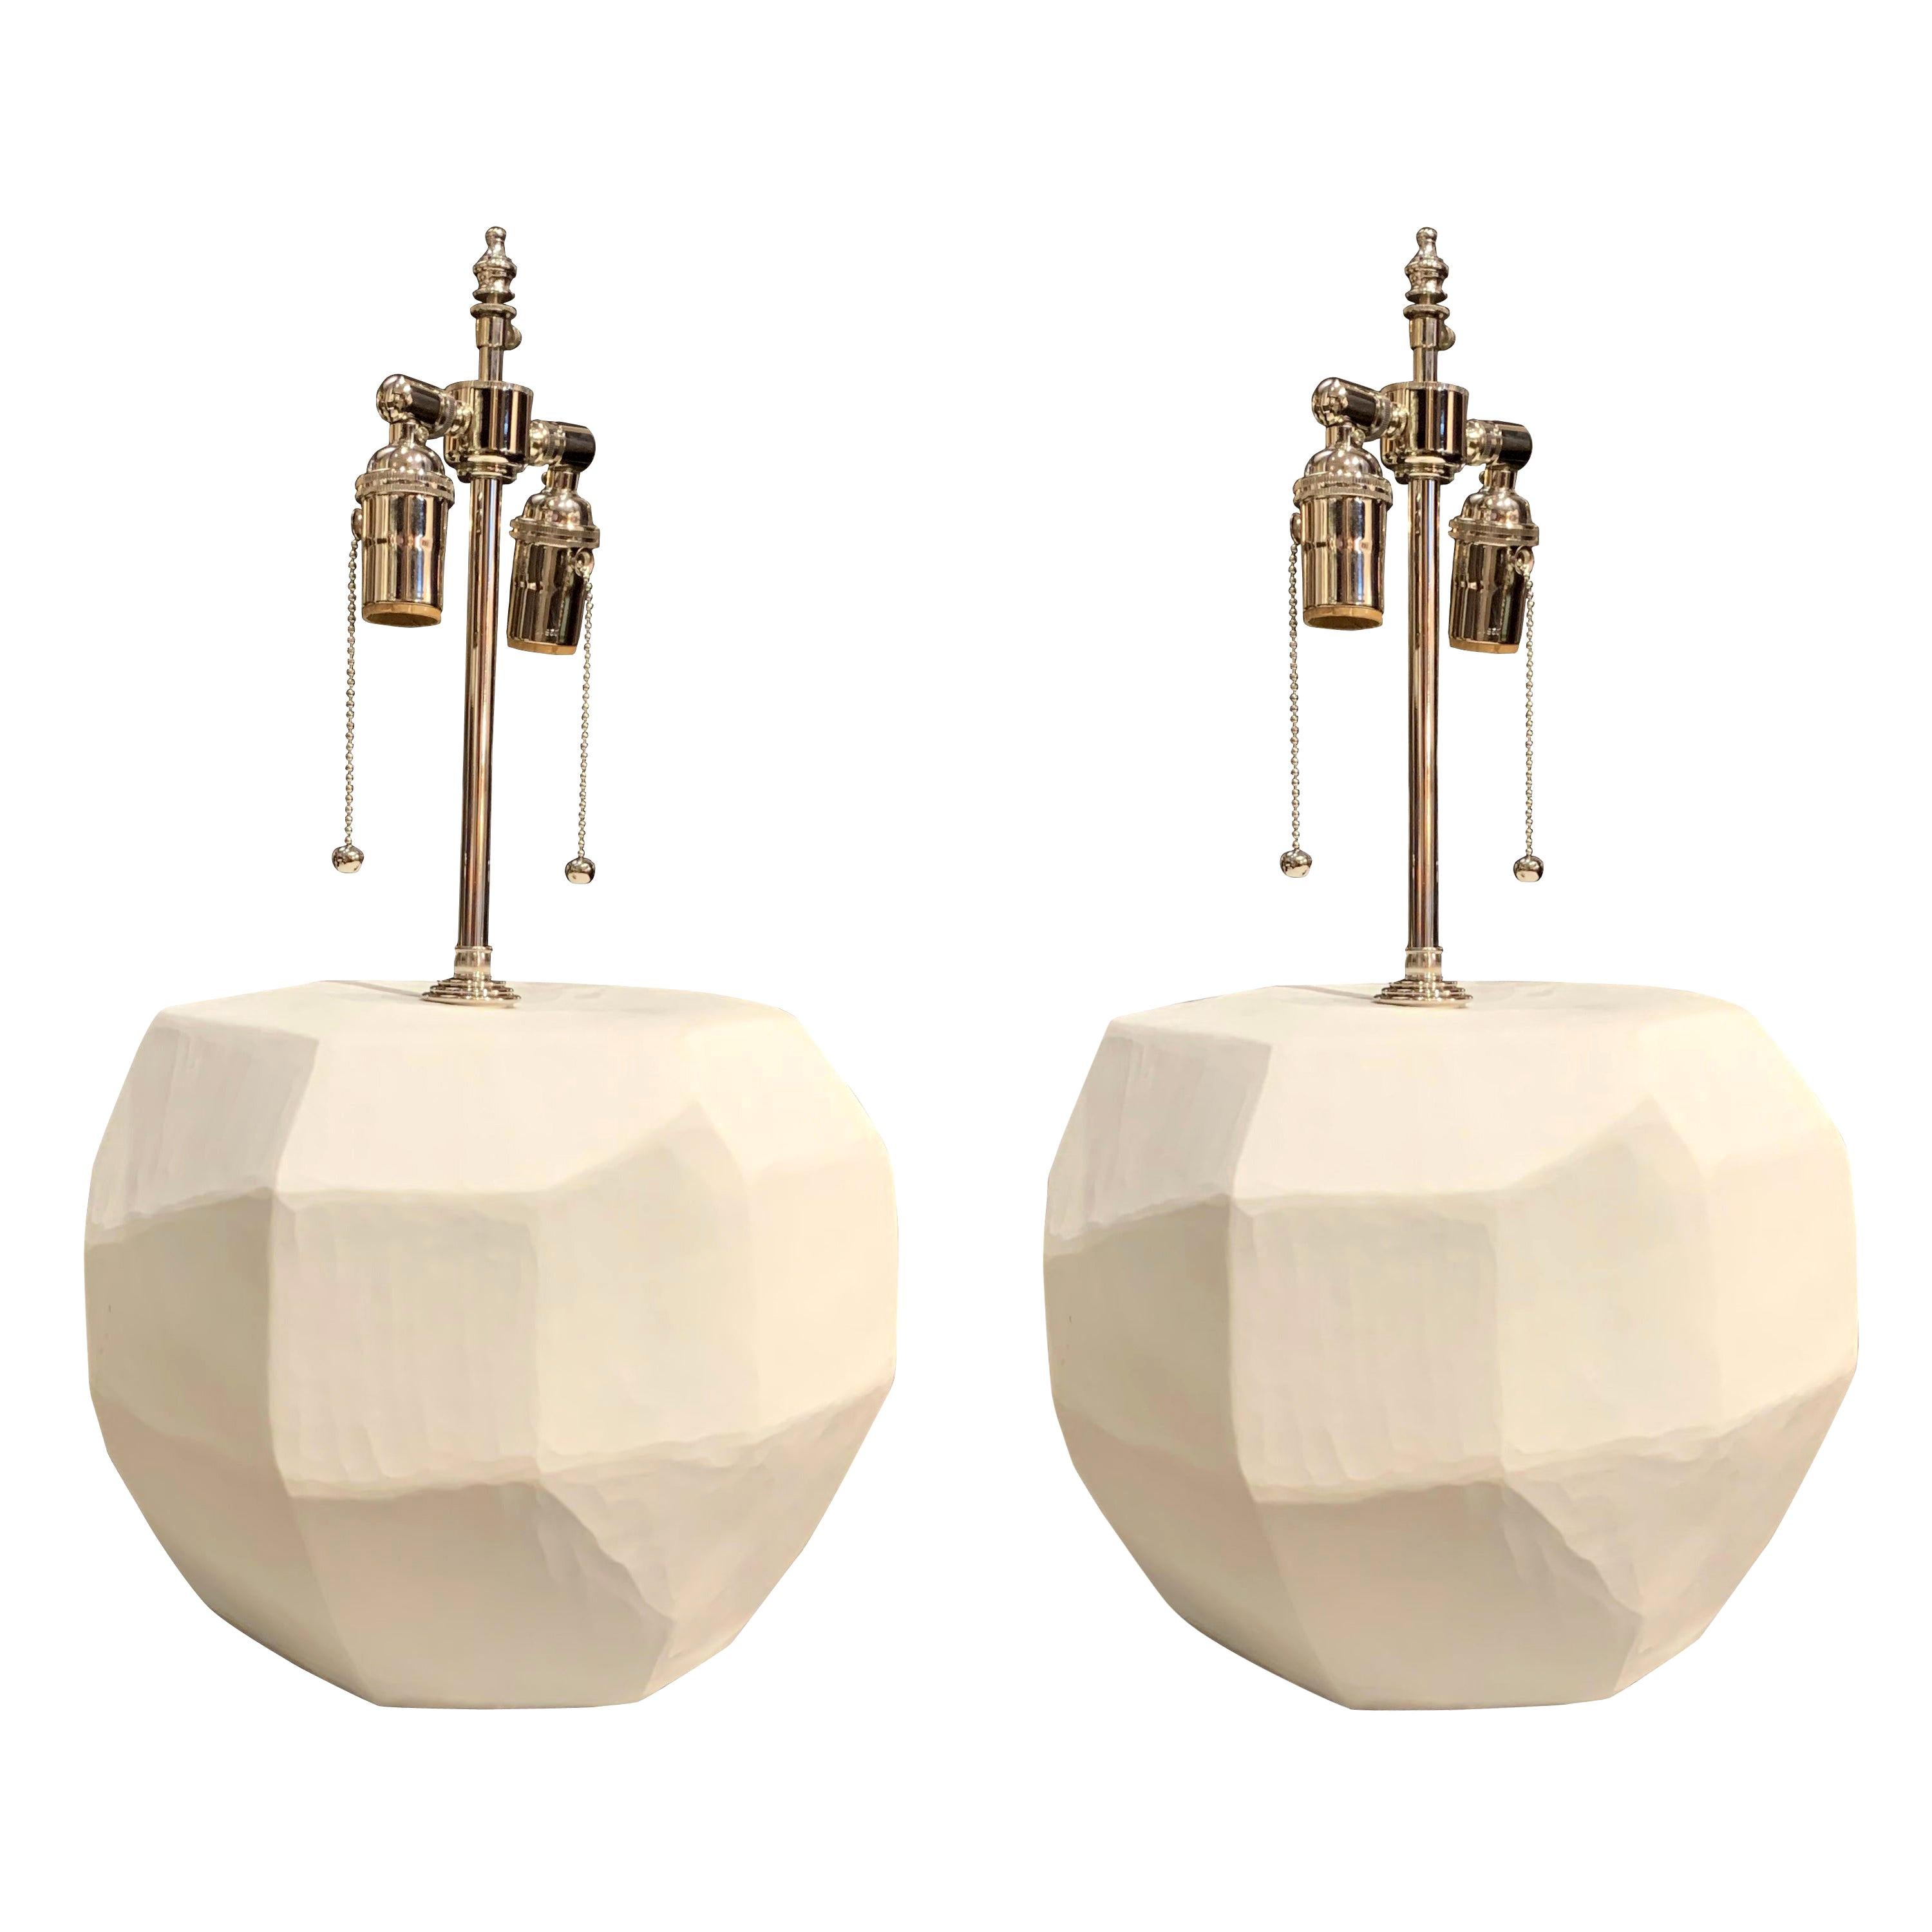 Zeitgenössisches rumänisches Lampenpaar aus mattweißem Glas mit kubistischer Dekorationsform.
Die Lampen sind neu verkabelt und haben zwei Fassungen.
Maße: Durchmesser Basis 11